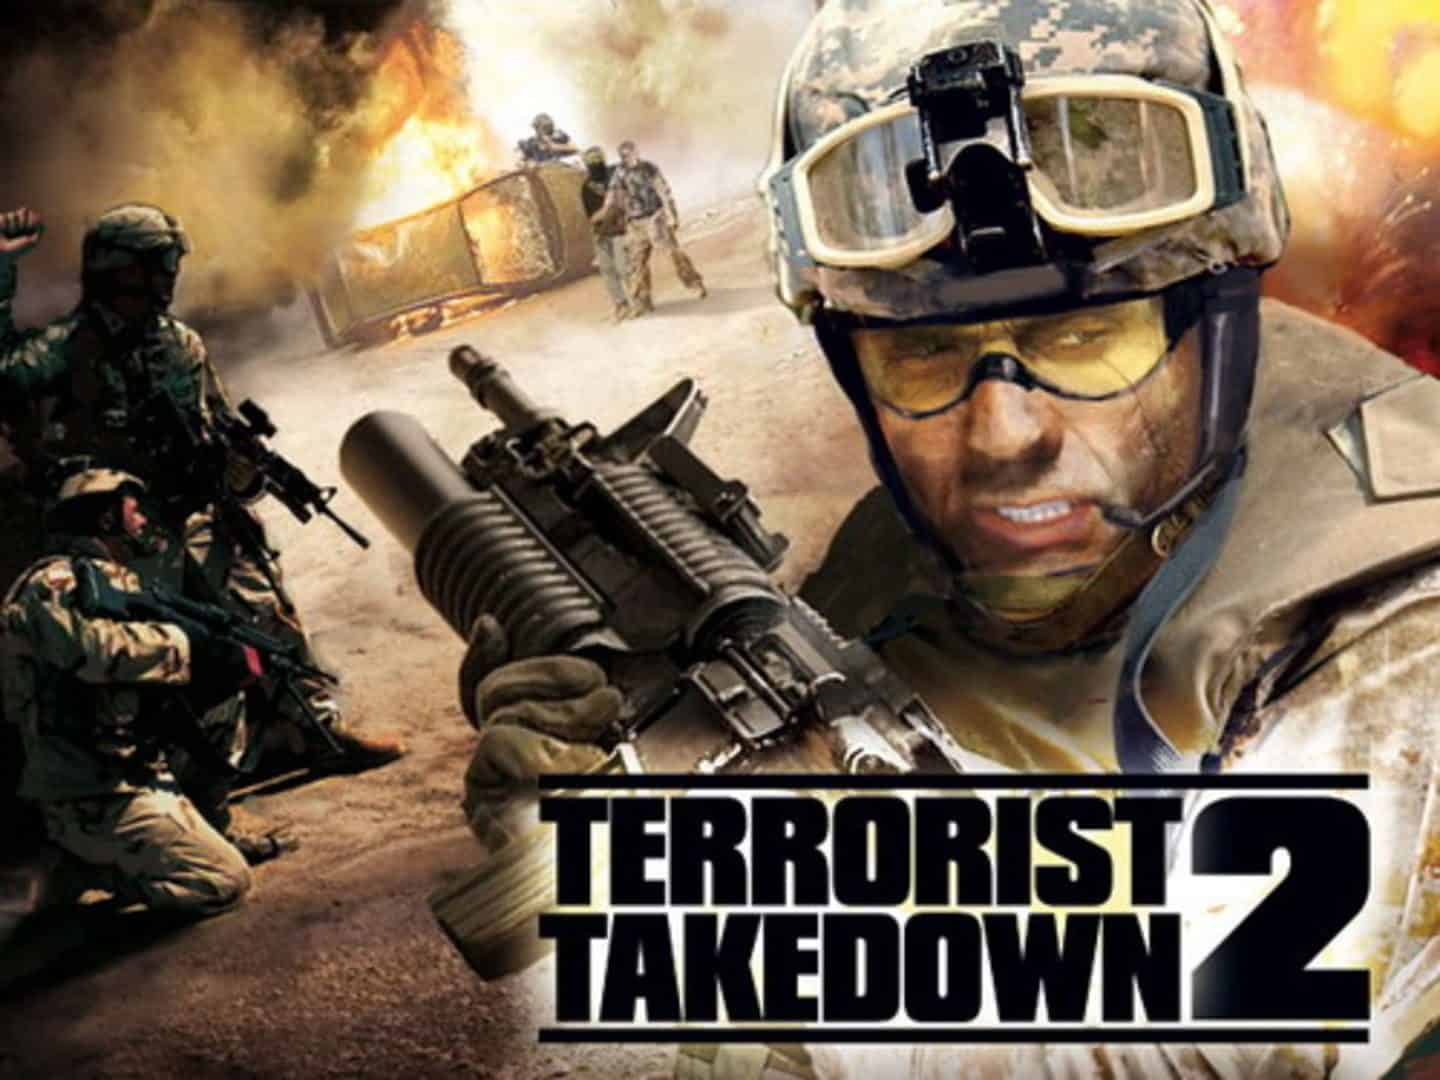 Terrorist Takedown 2: US Navy Seals